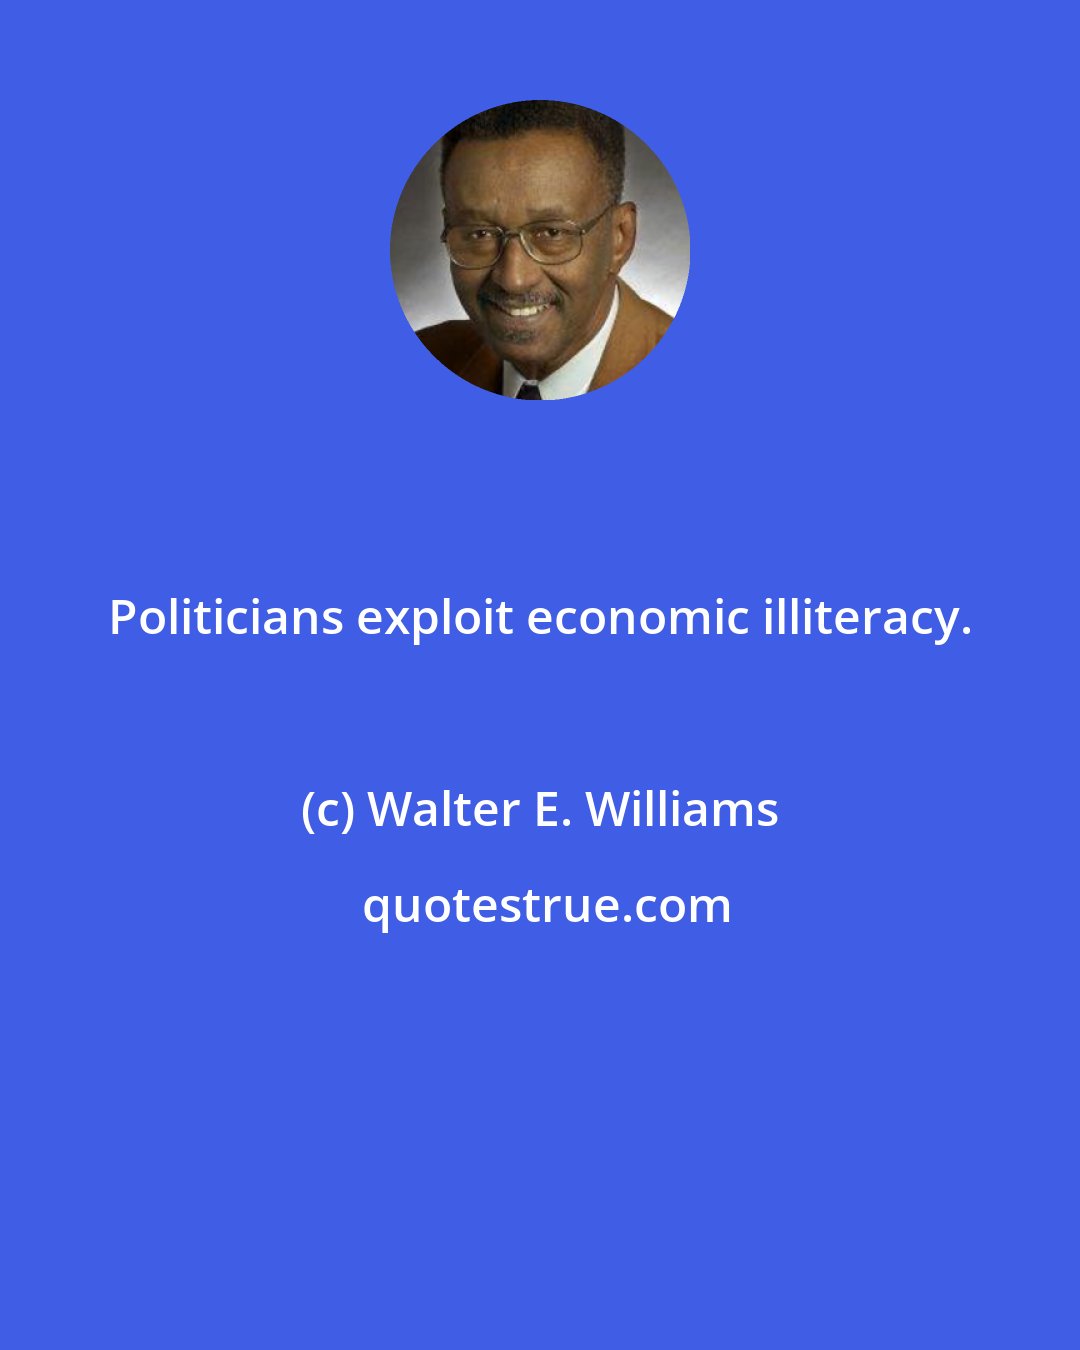 Walter E. Williams: Politicians exploit economic illiteracy.